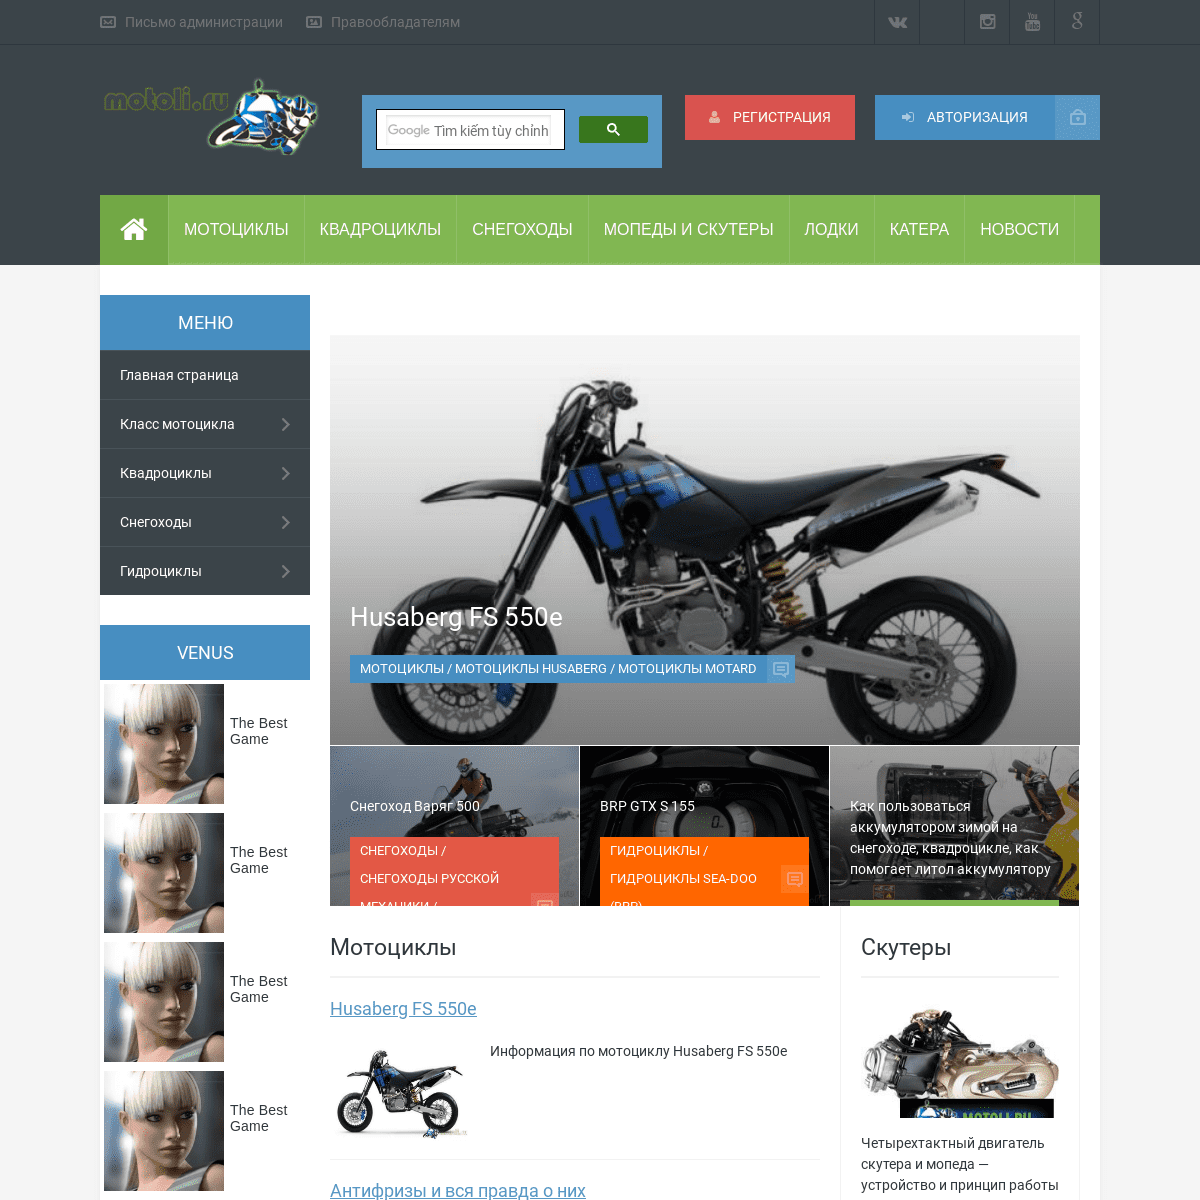 MOTOLI.RU - Информационно-развлекательный портал для мотоциклистов